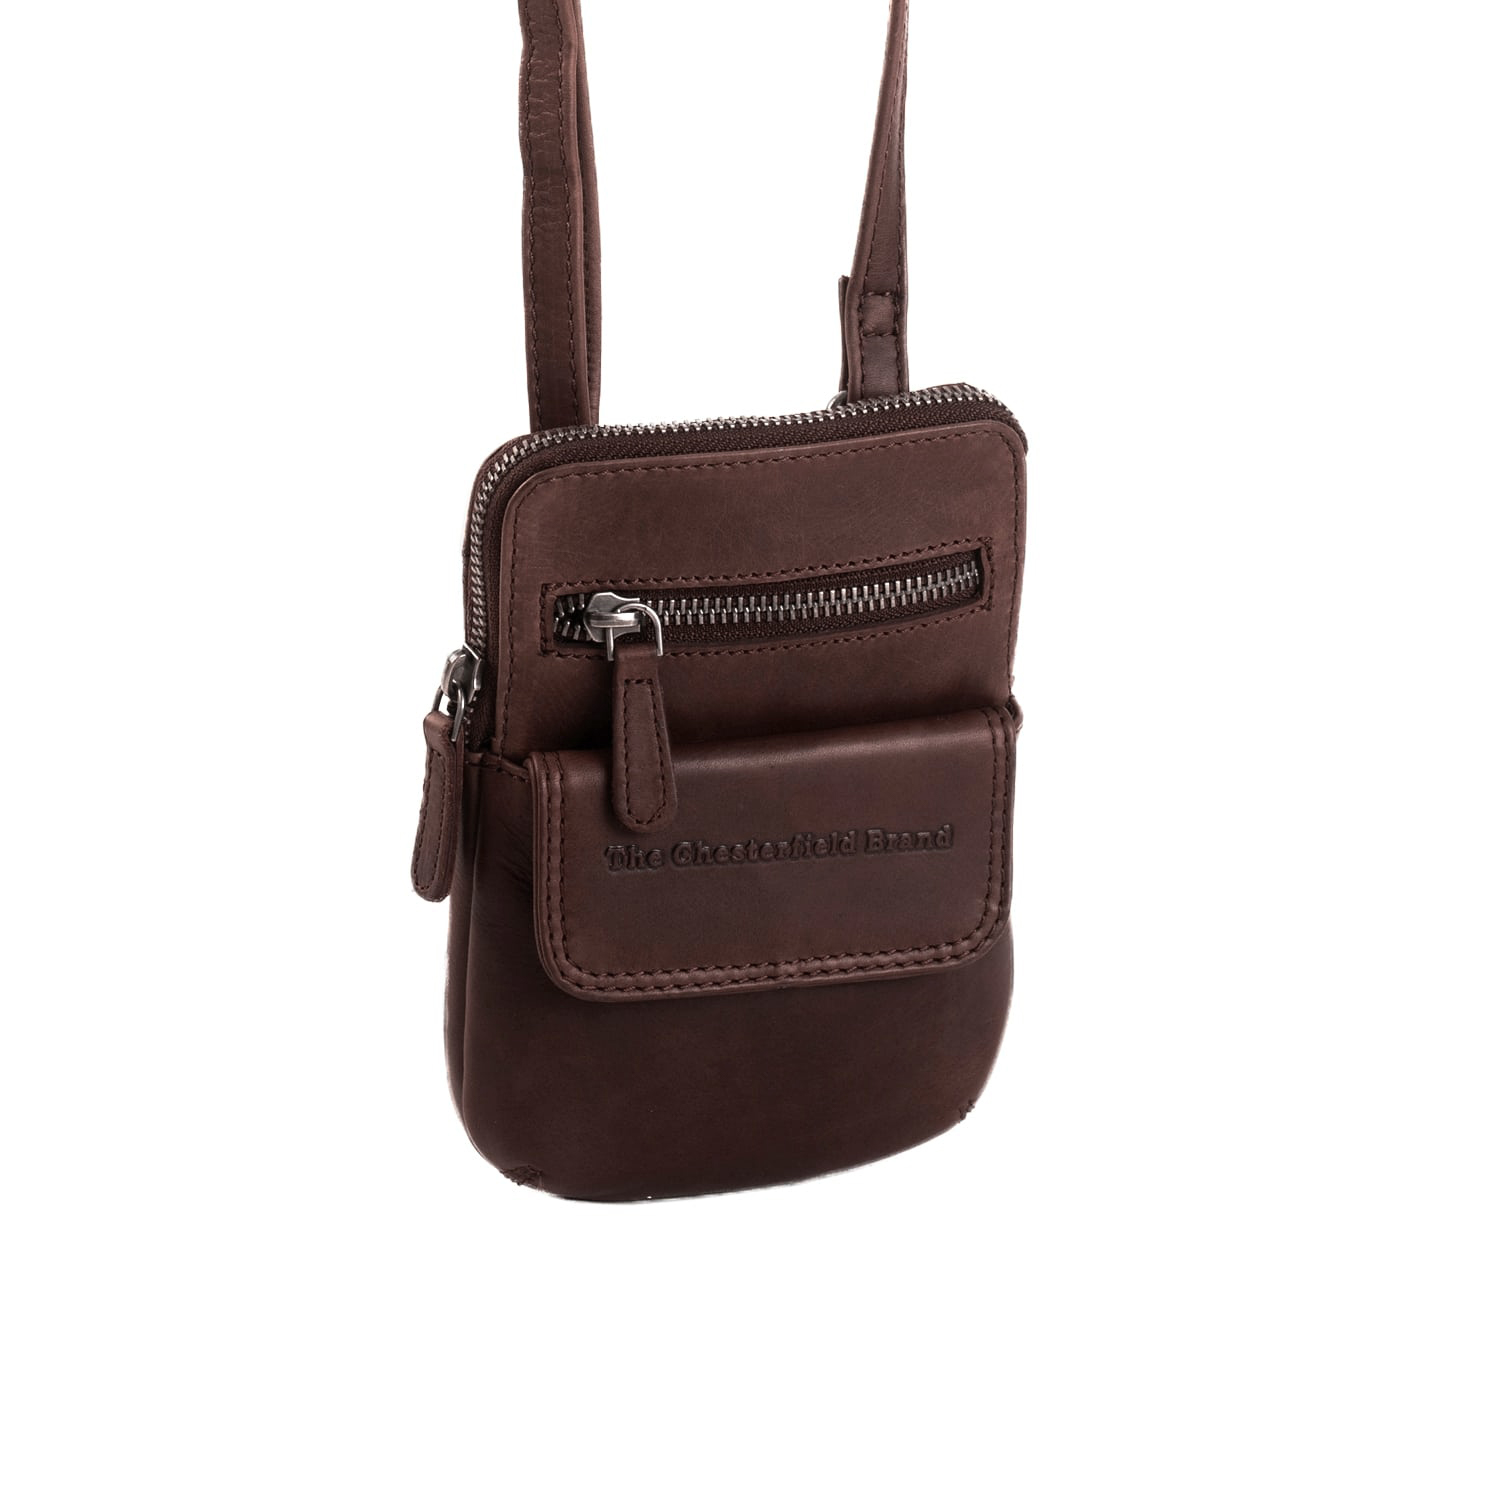 Shoulder bag "Maya" brown